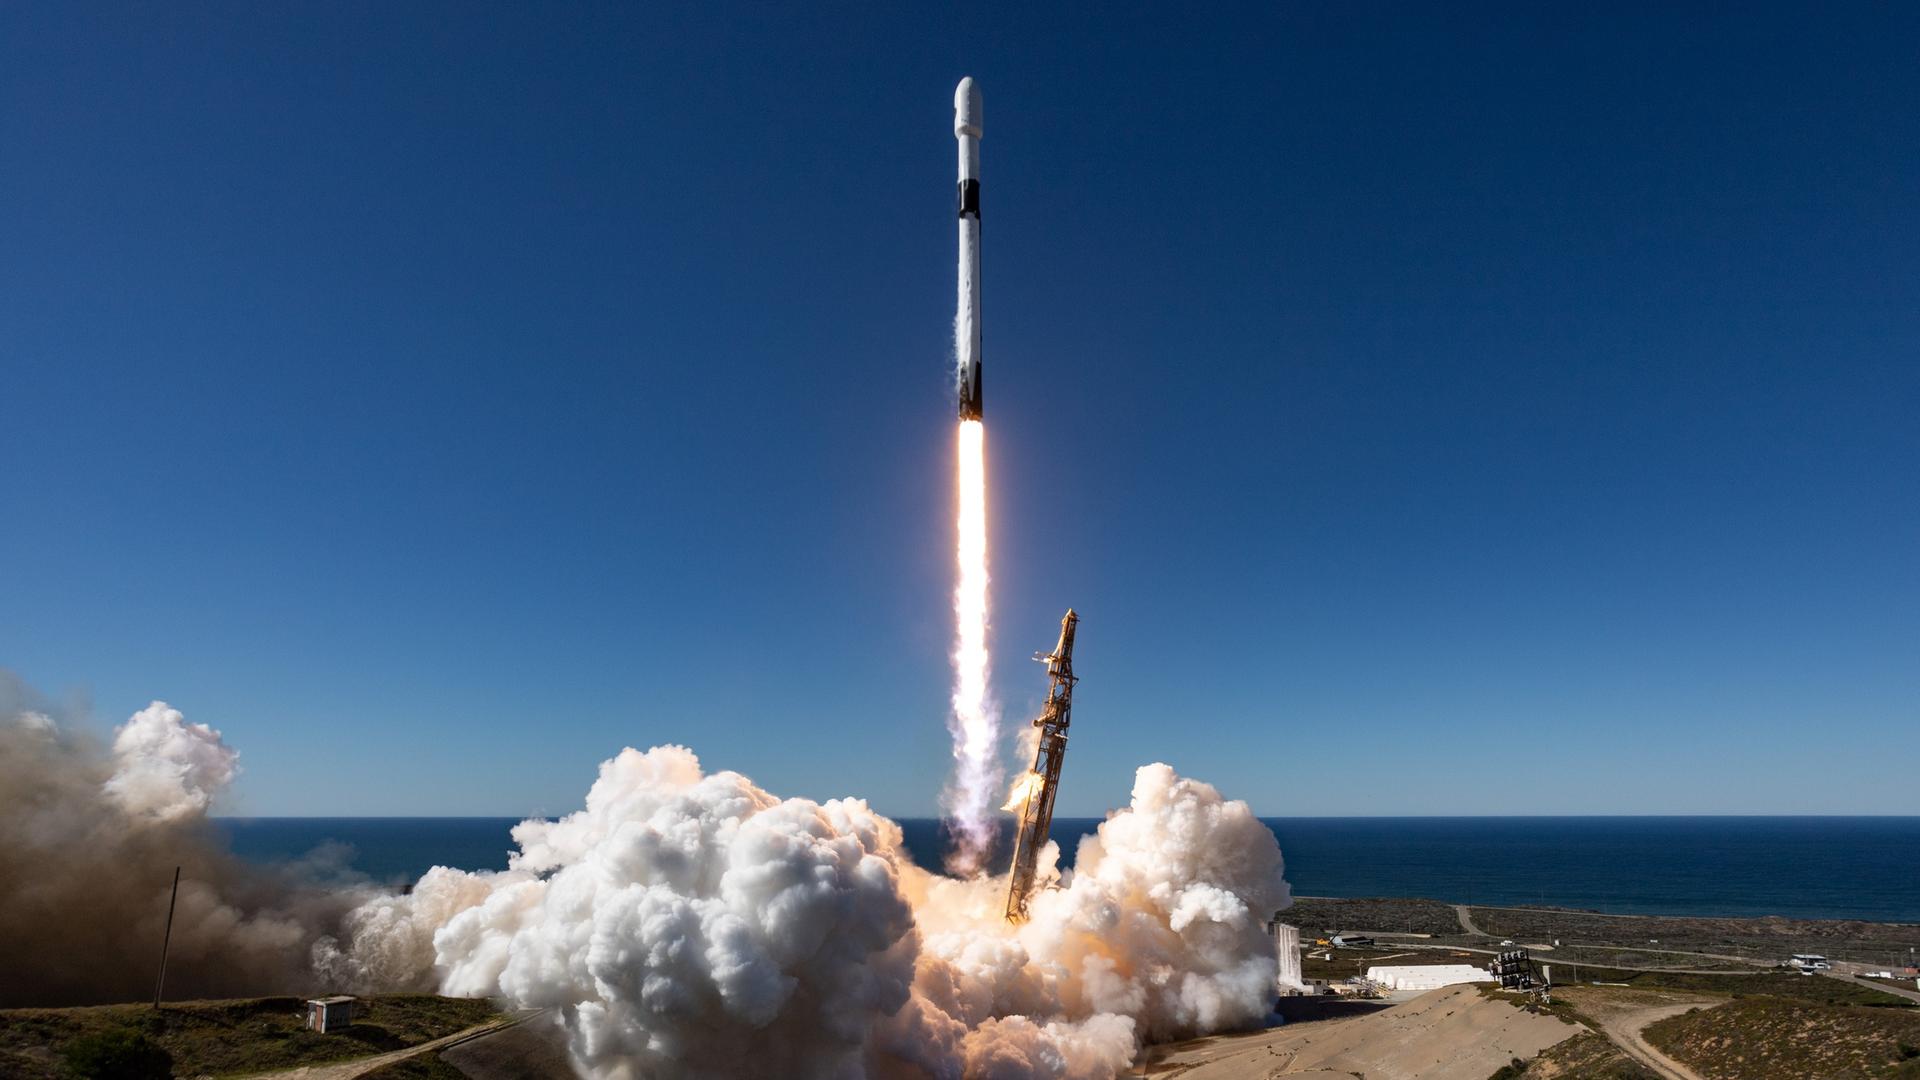 Die meisten Raketen (hier eine Falcon 9 beim Start) nutzen flüssigen Treibstoff, etwa Kerosin und Sauerstoff. 